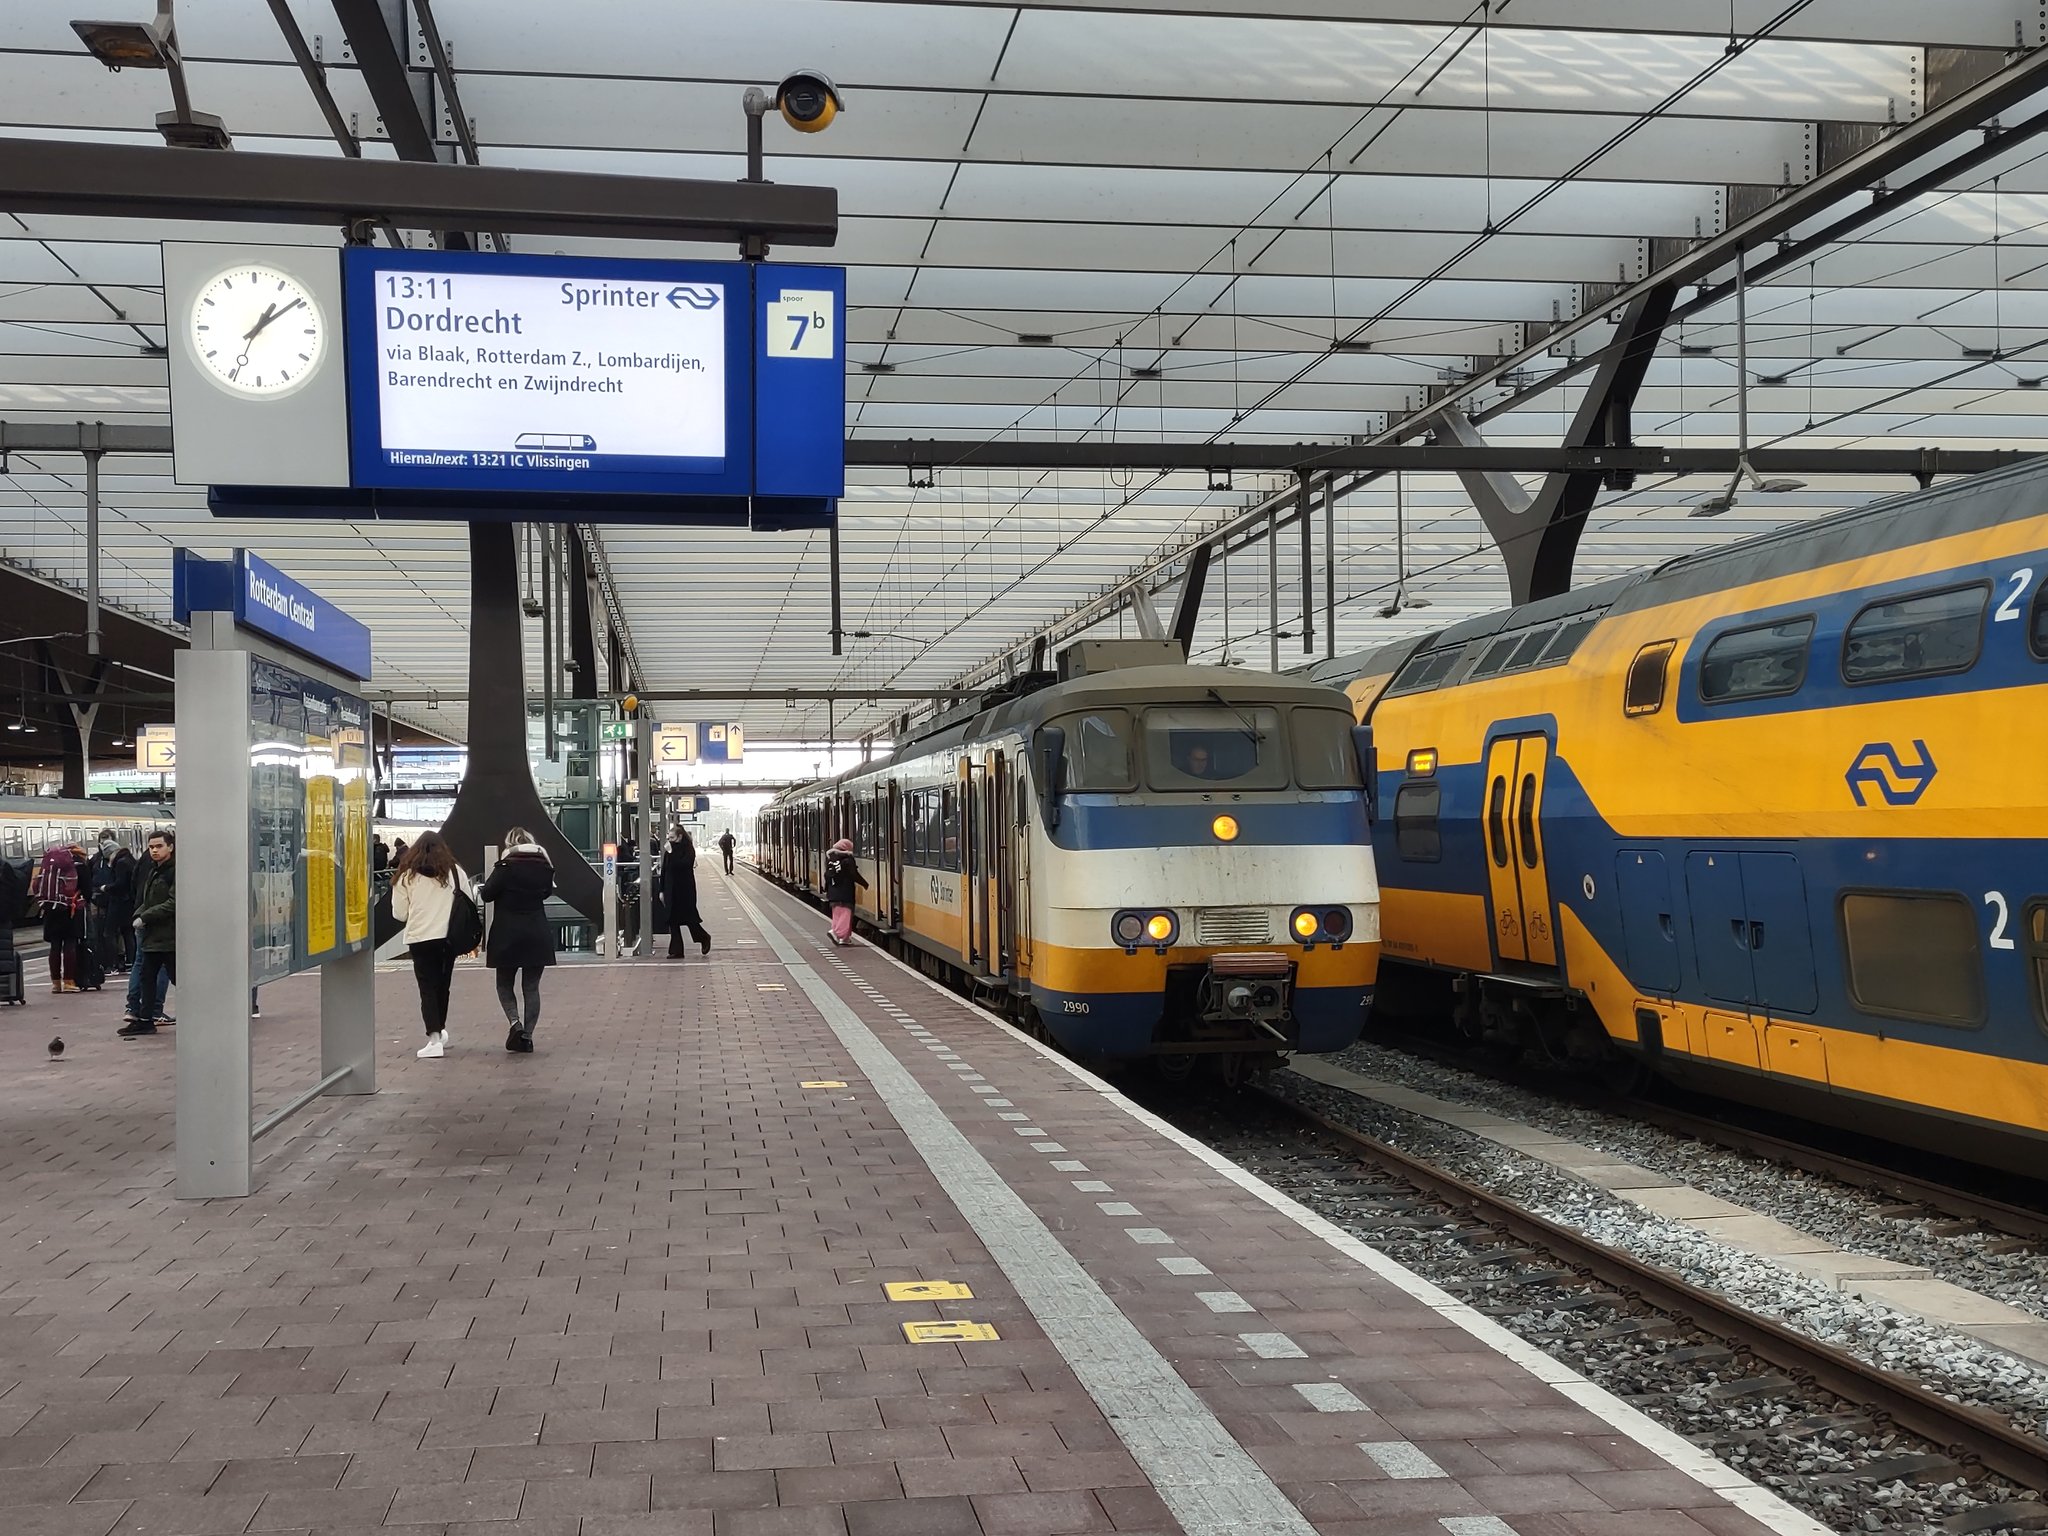 Sprinter at Rotterdam Central